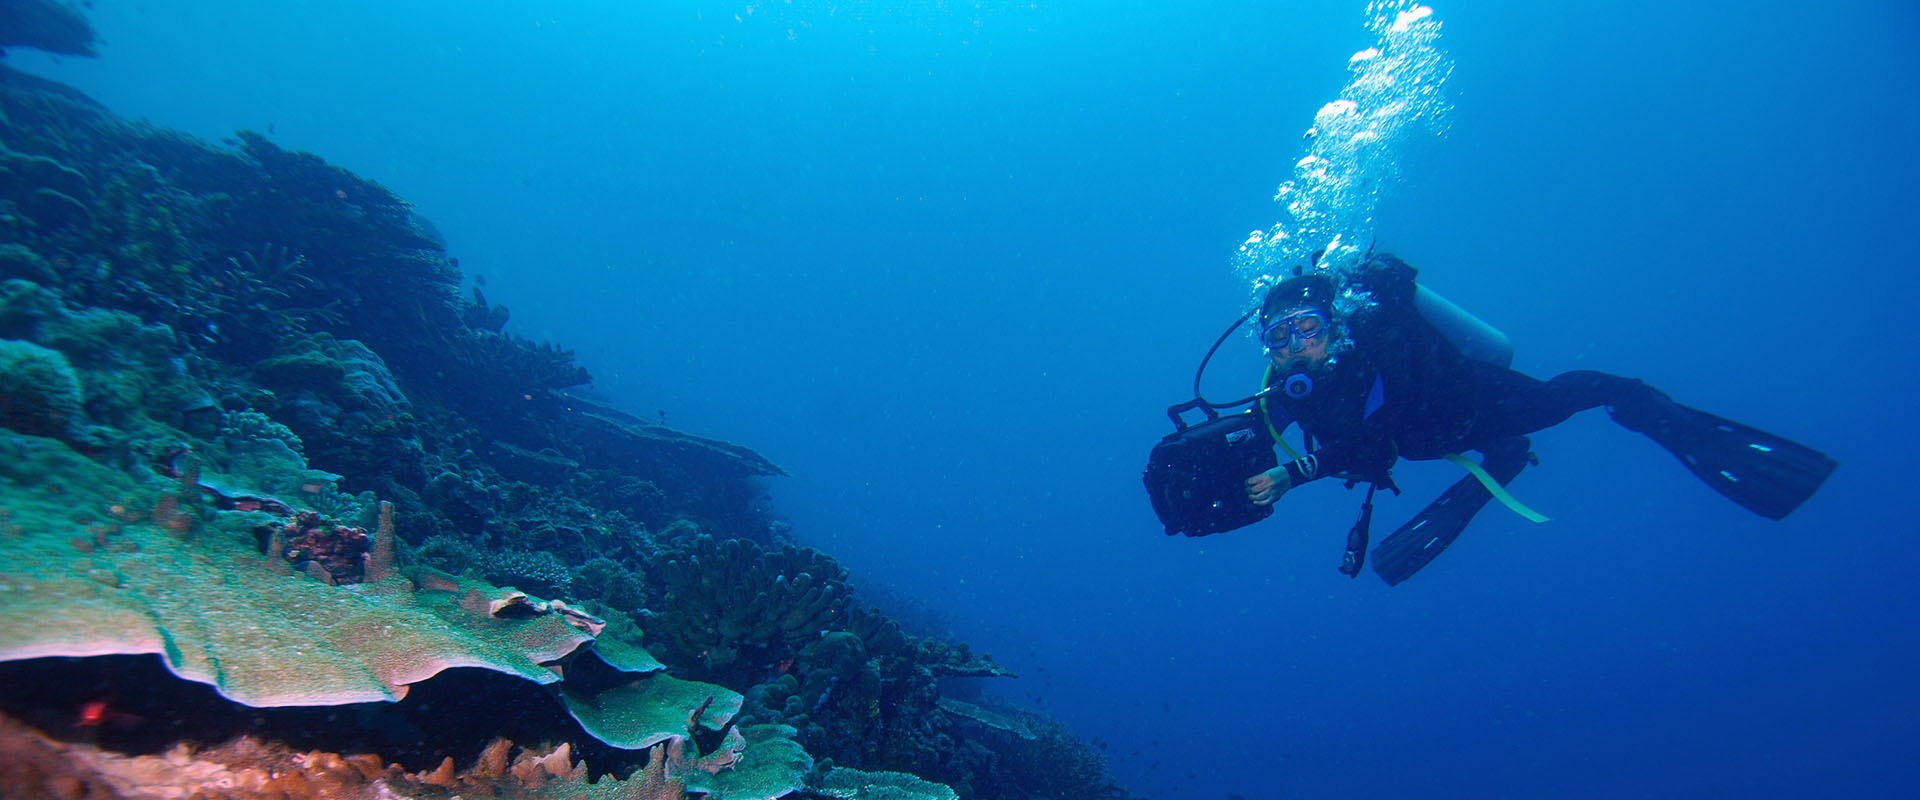 Halmahera Liveaboard Diving